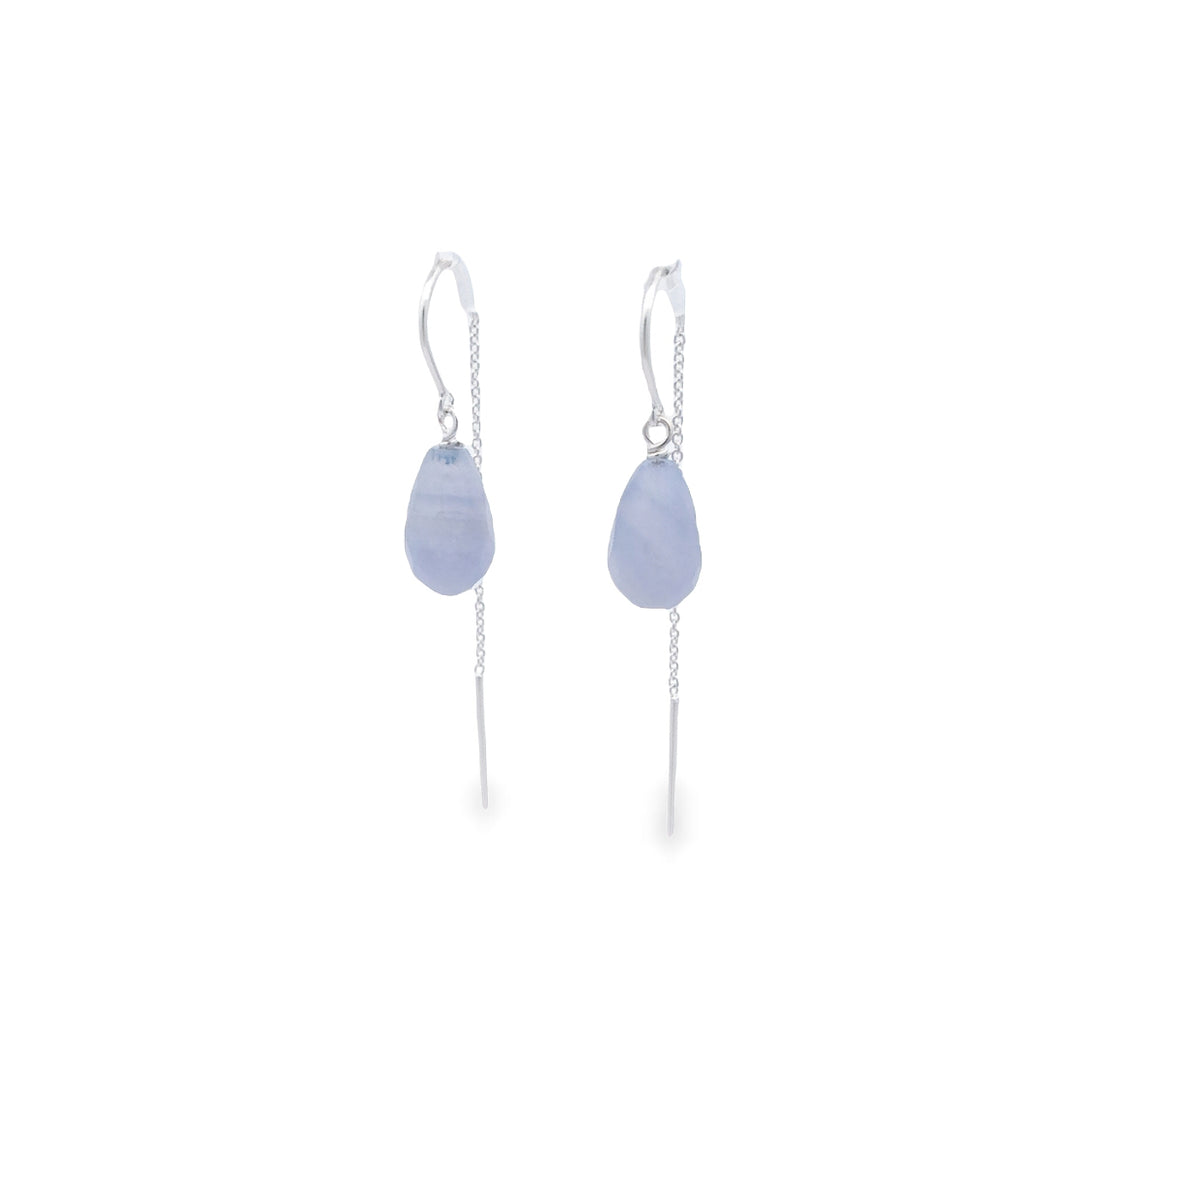 Sterling Silver Thread Teardrop Blue Lace Stone Earrings